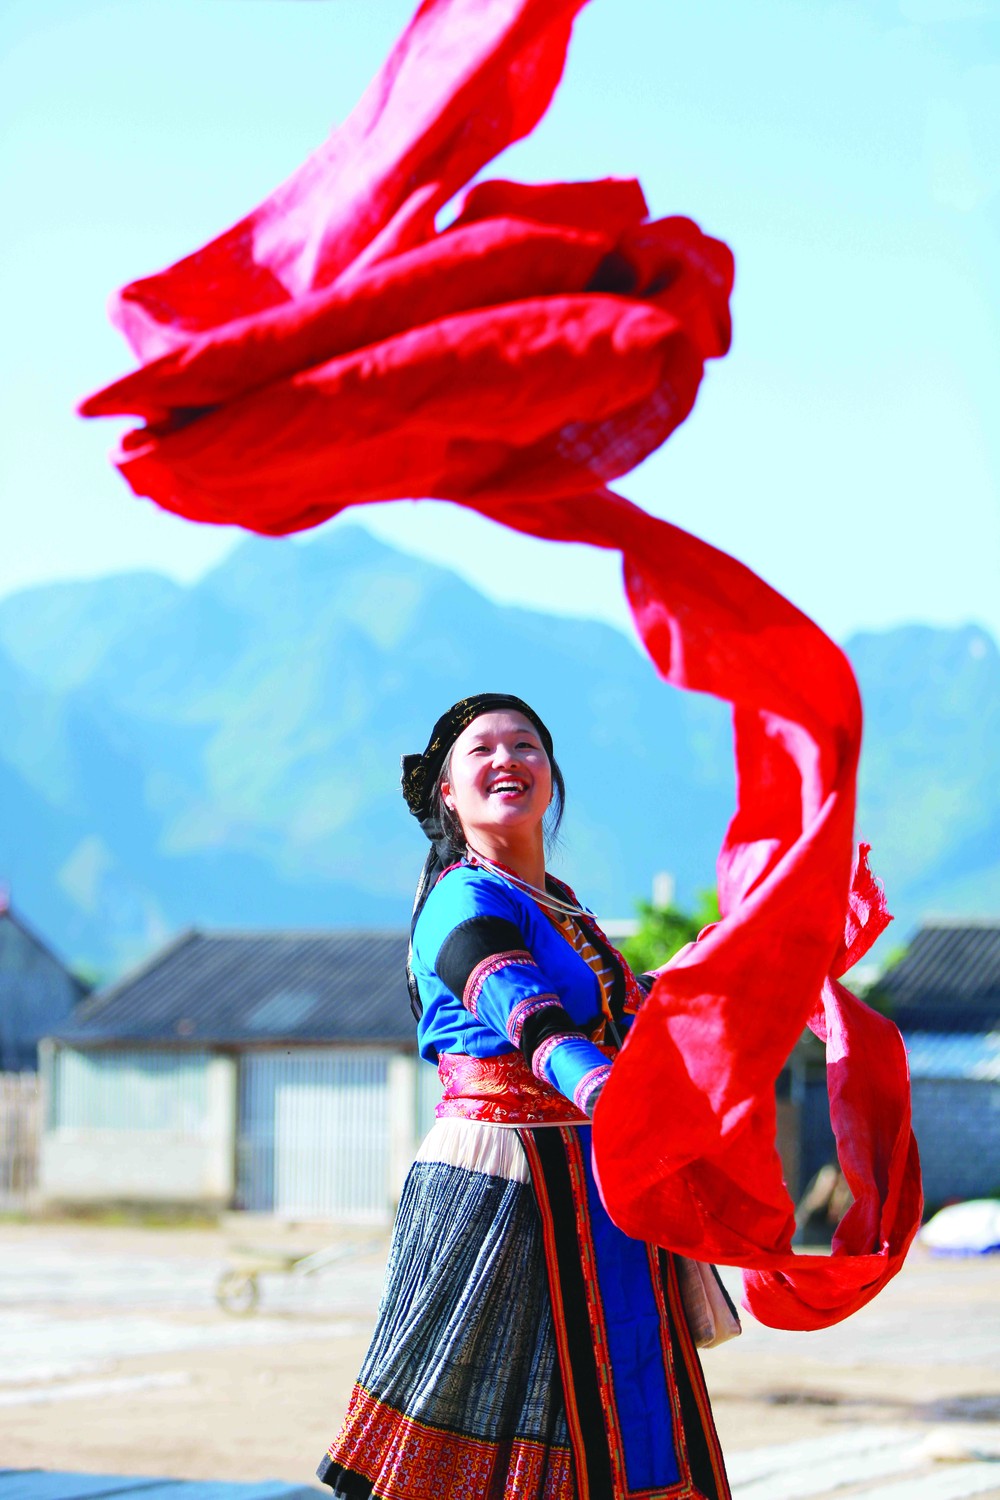 Dệt lanh là một nghề truyền thống của người Mông ở xã Lùng Tám, huyện Quản Bạ (Hà Giang). Nghề dệt lanh đã góp phần giúp người Mông ở nơi đây thoát nghèo và vươn lên làm giàu. Ảnh: An Thành Đạt